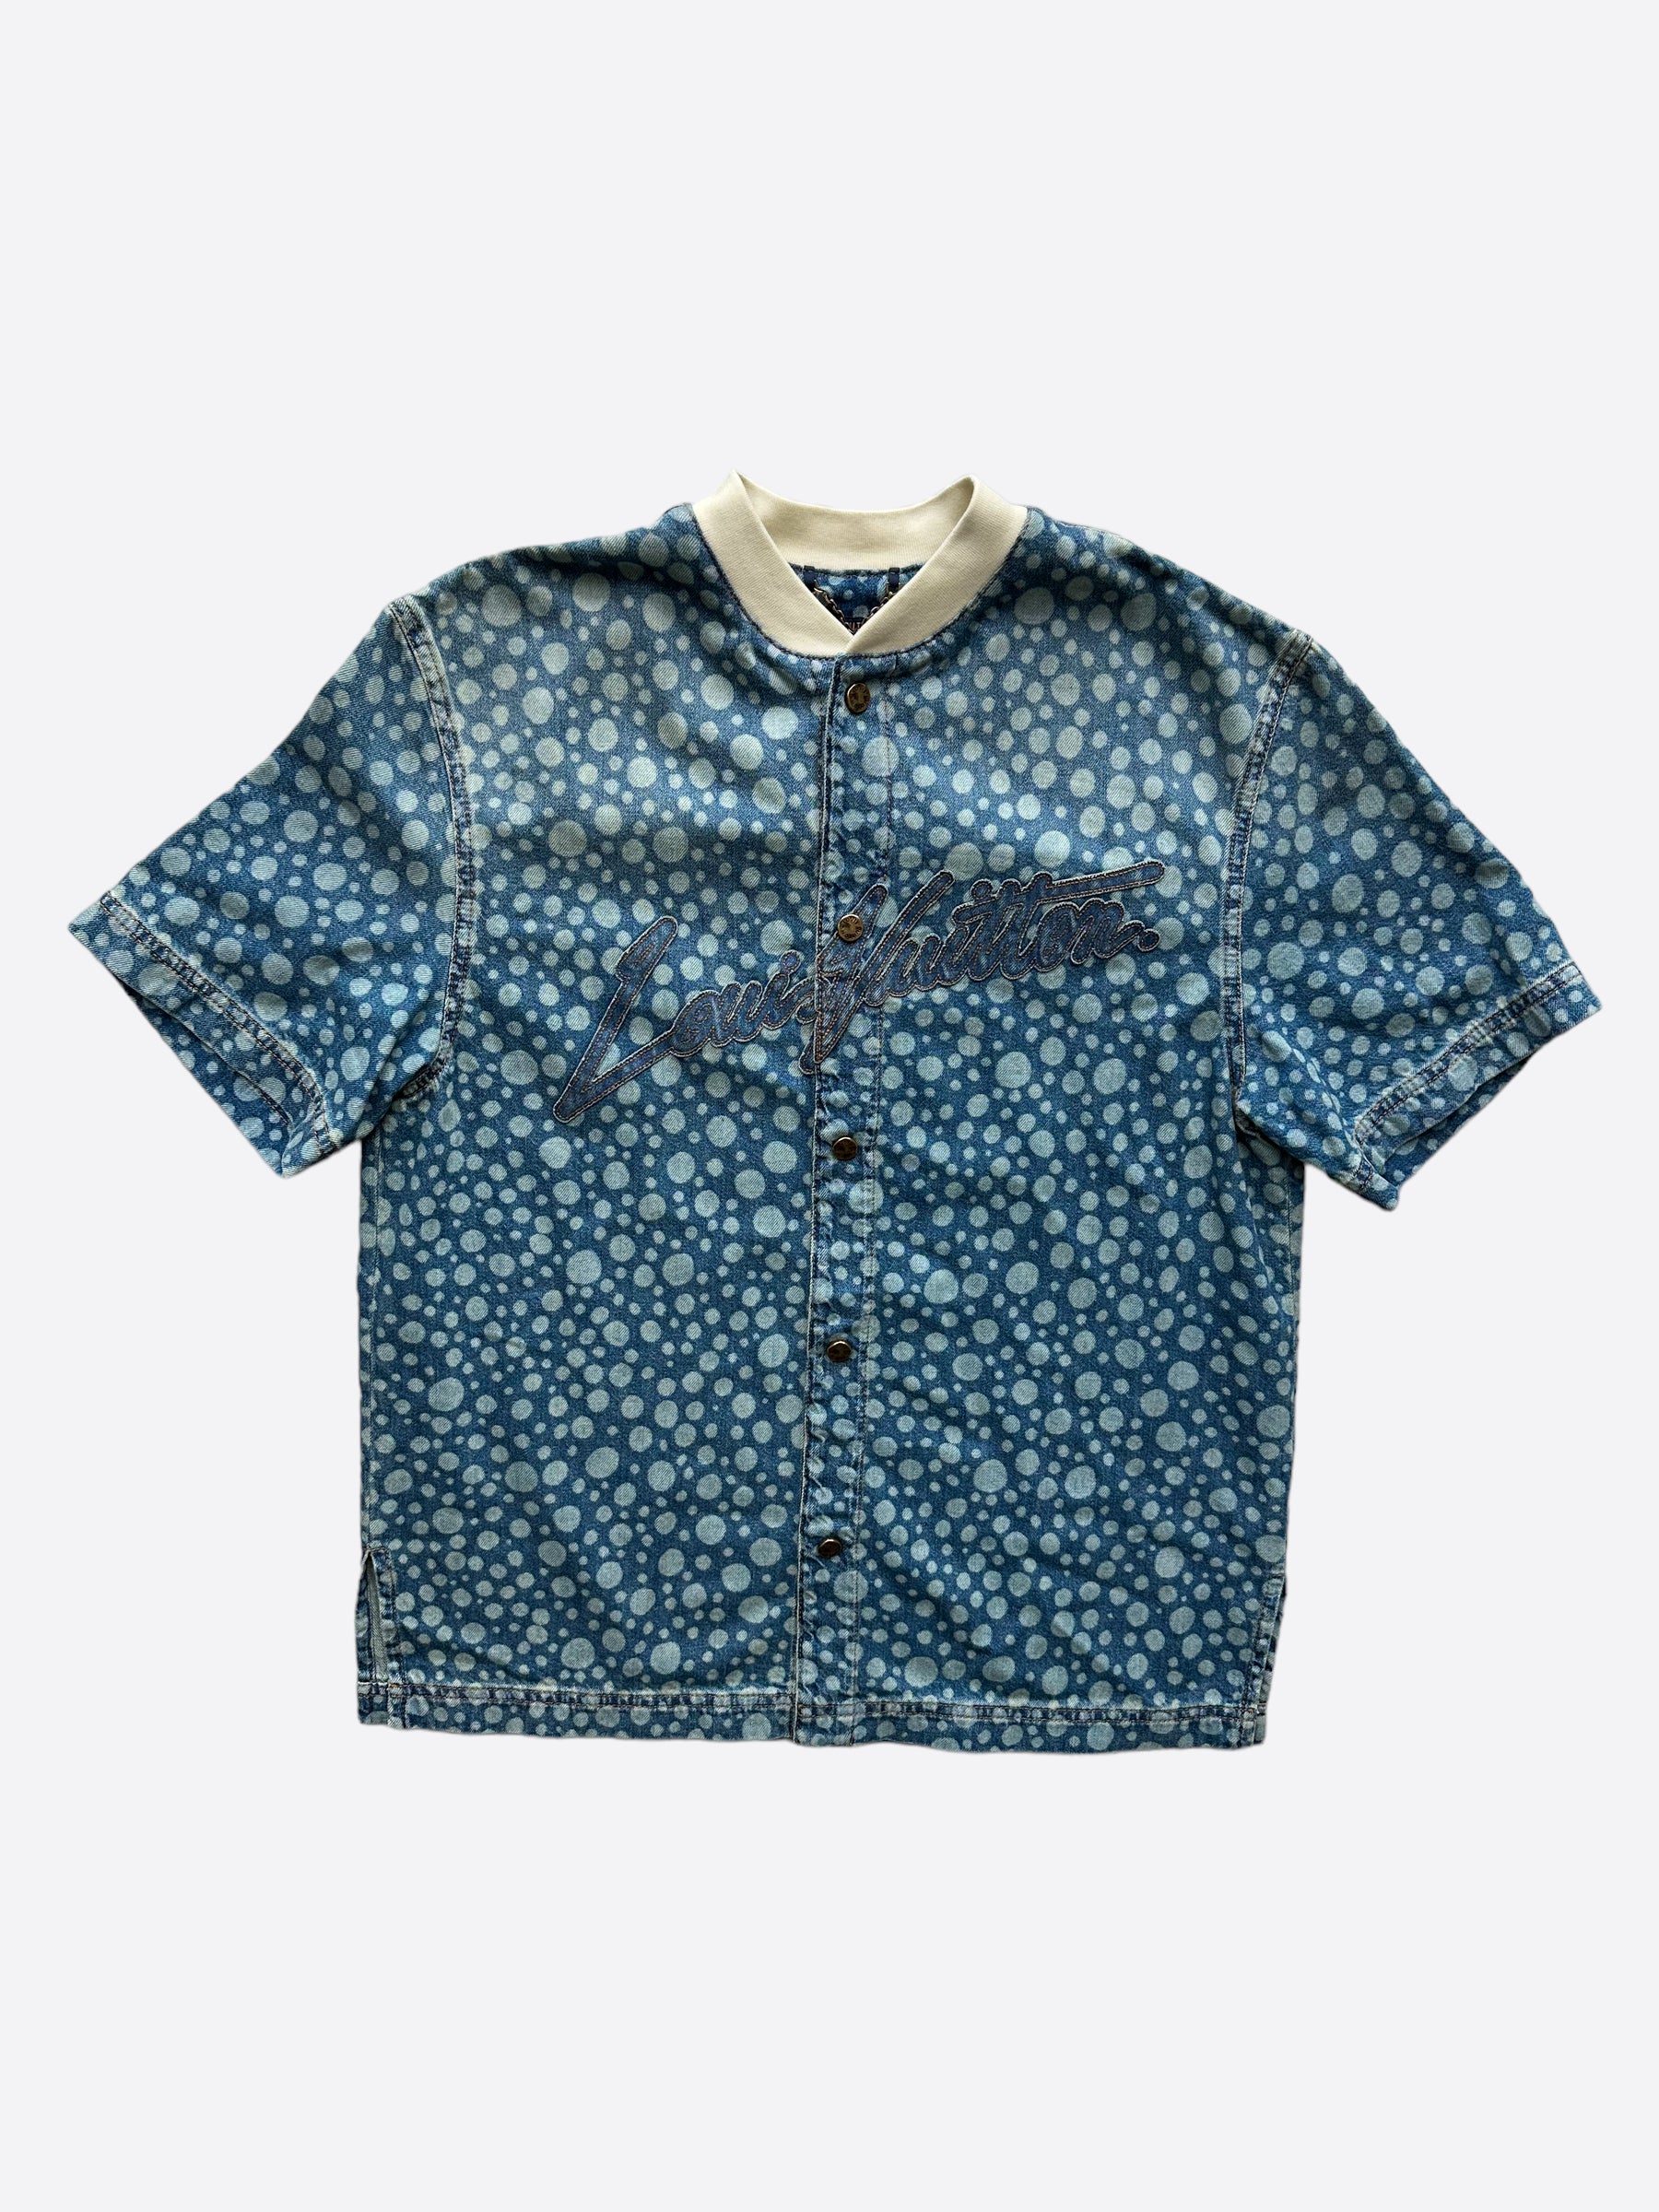 Louis Vuitton Yayoi Kusama Infinity Dots Monogram Shirt Dress